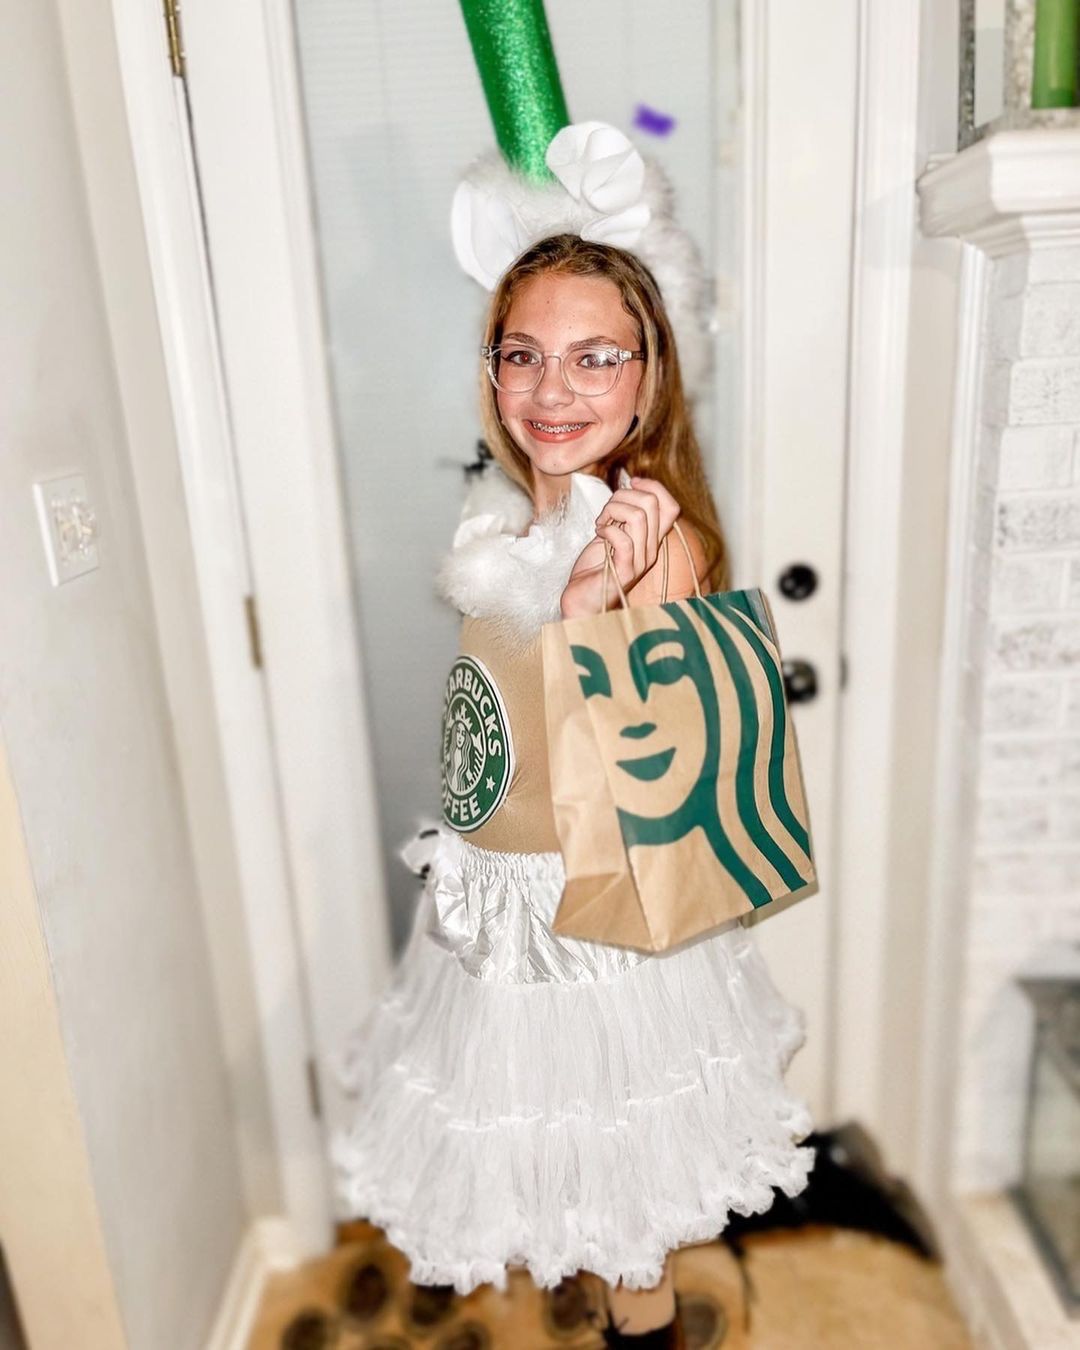 tween girl wearing homemade starbucks cup costume for halloween